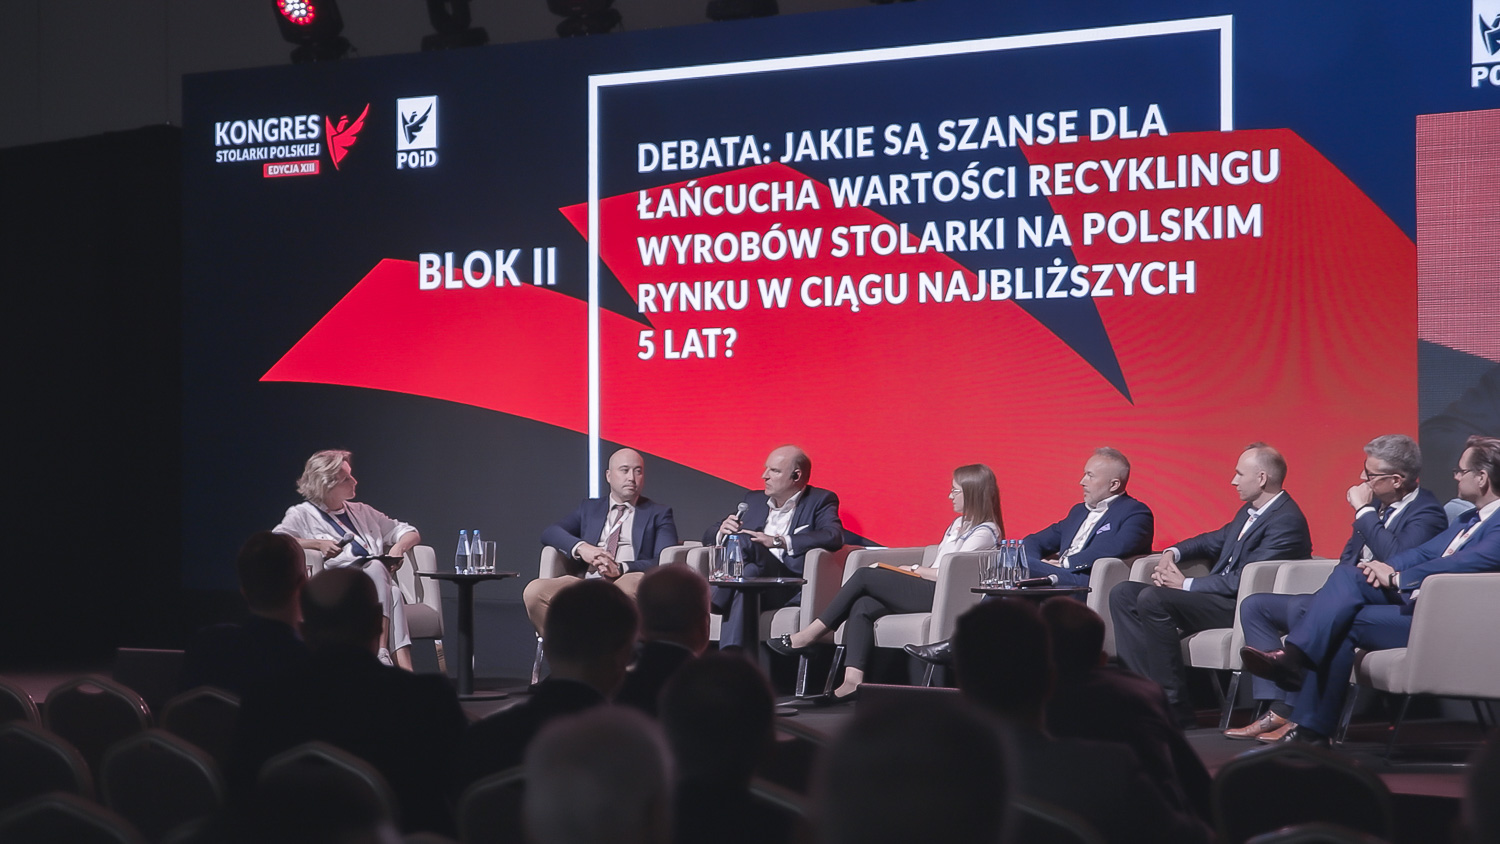 POiD XIII Kongres Stolarki Polskiej debata recykling stolarki